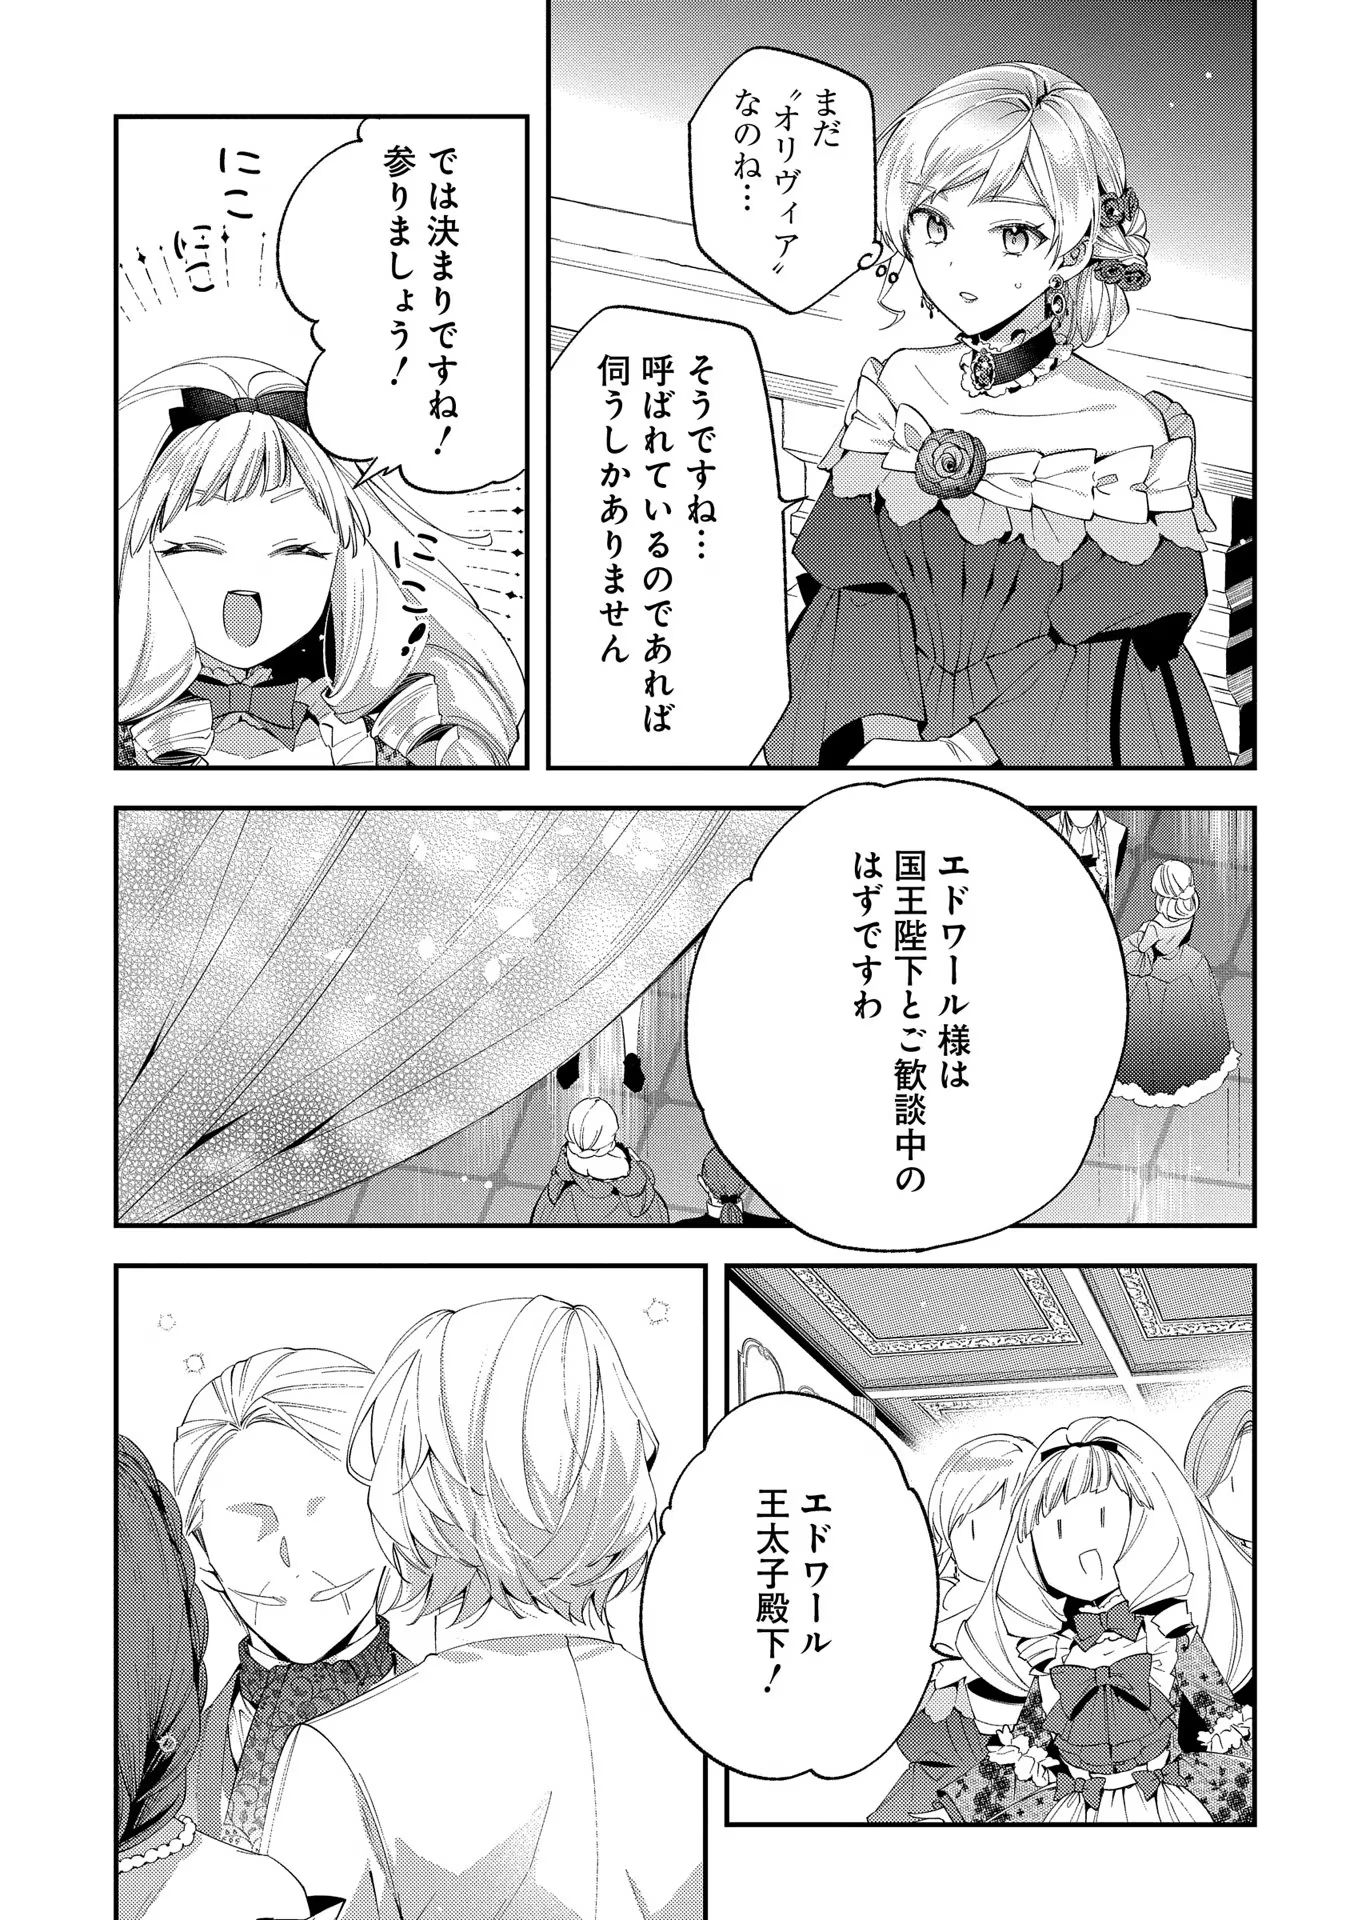 Outaishi ni Konyaku Hakisareta no de, Mou Baka no Furi wa Yameyou to Omoimasu - Chapter 11 - Page 19